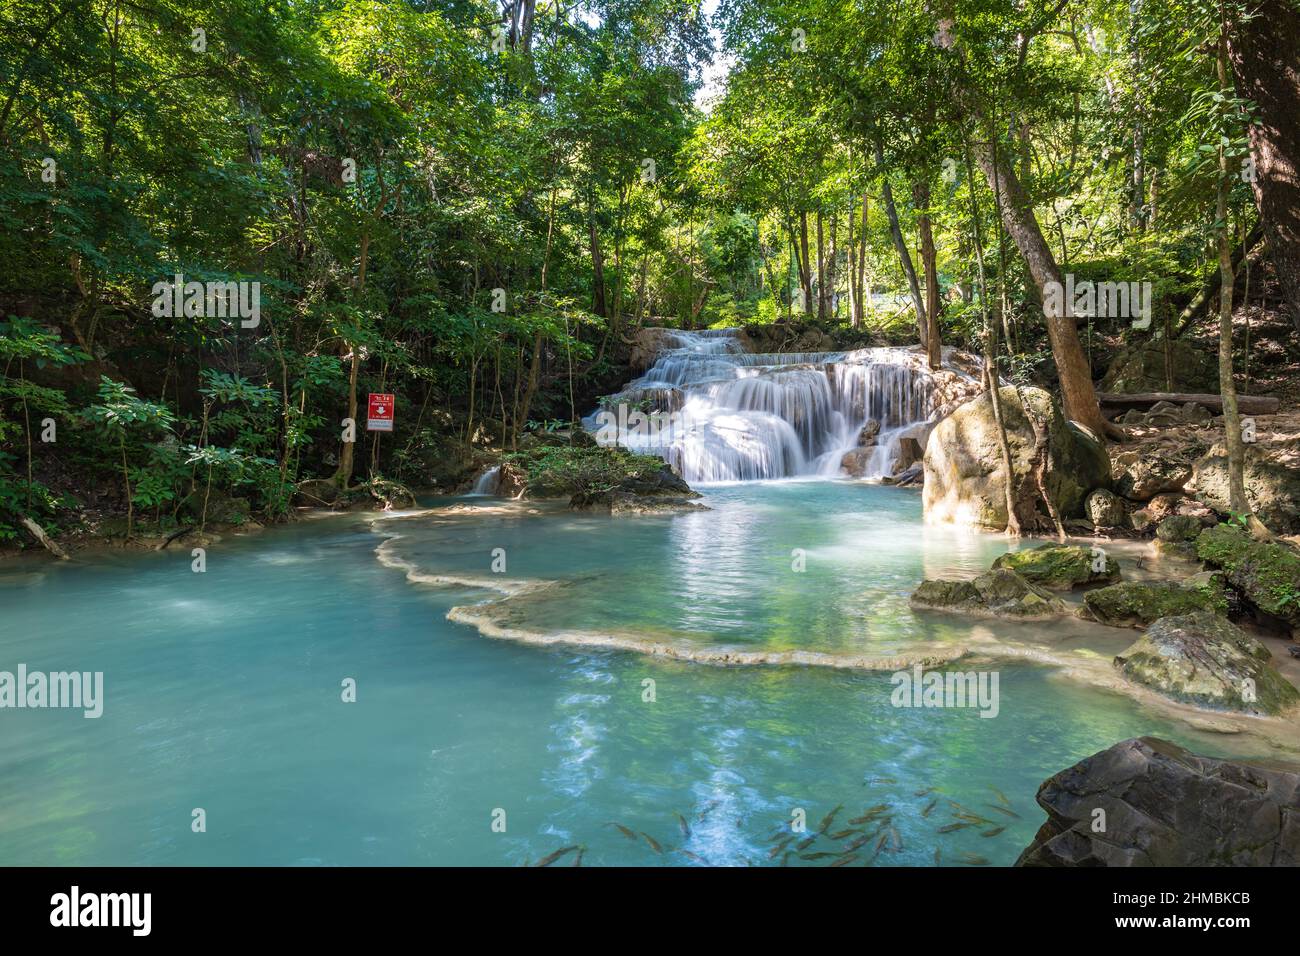 Erawan Nationalpark in Thailand. Der Erawan-Wasserfall ist ein beliebtes Touristenziel und berühmt für sein smaragdblaues Wasser. Tiefer Wald in den Tropen Stockfoto